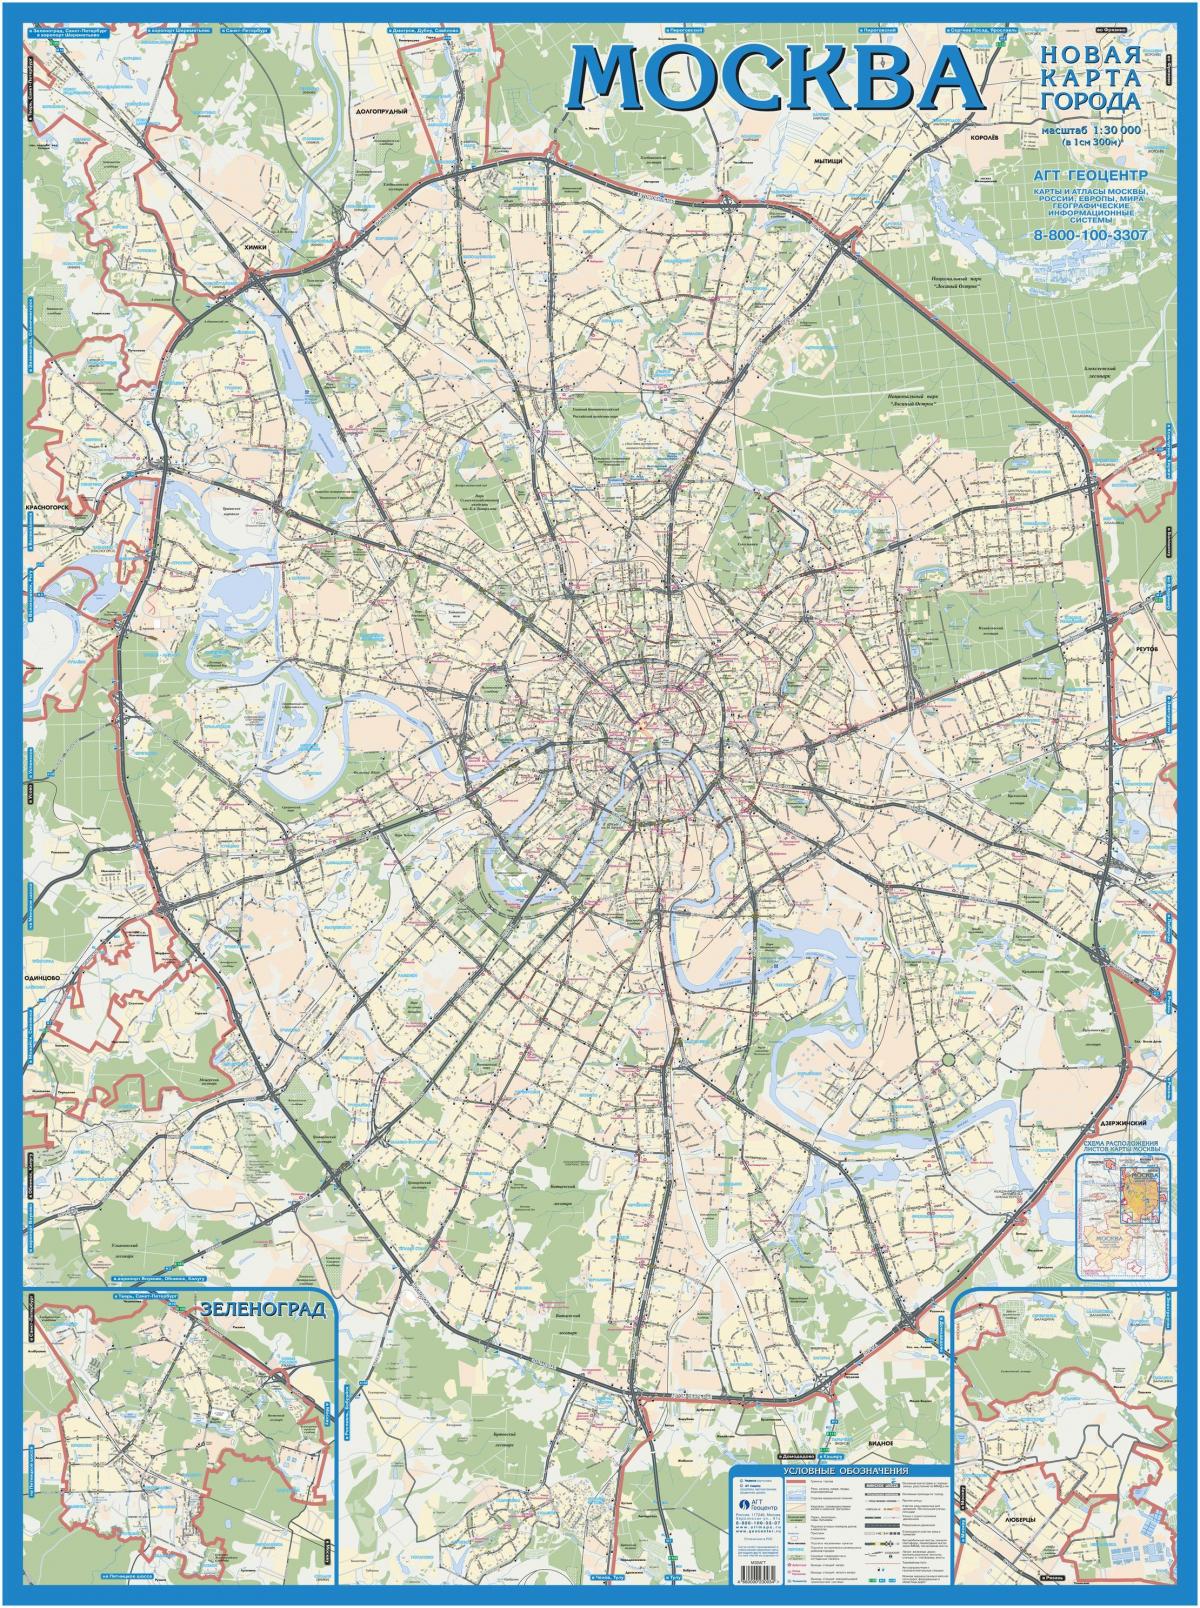 Moskva topographic map